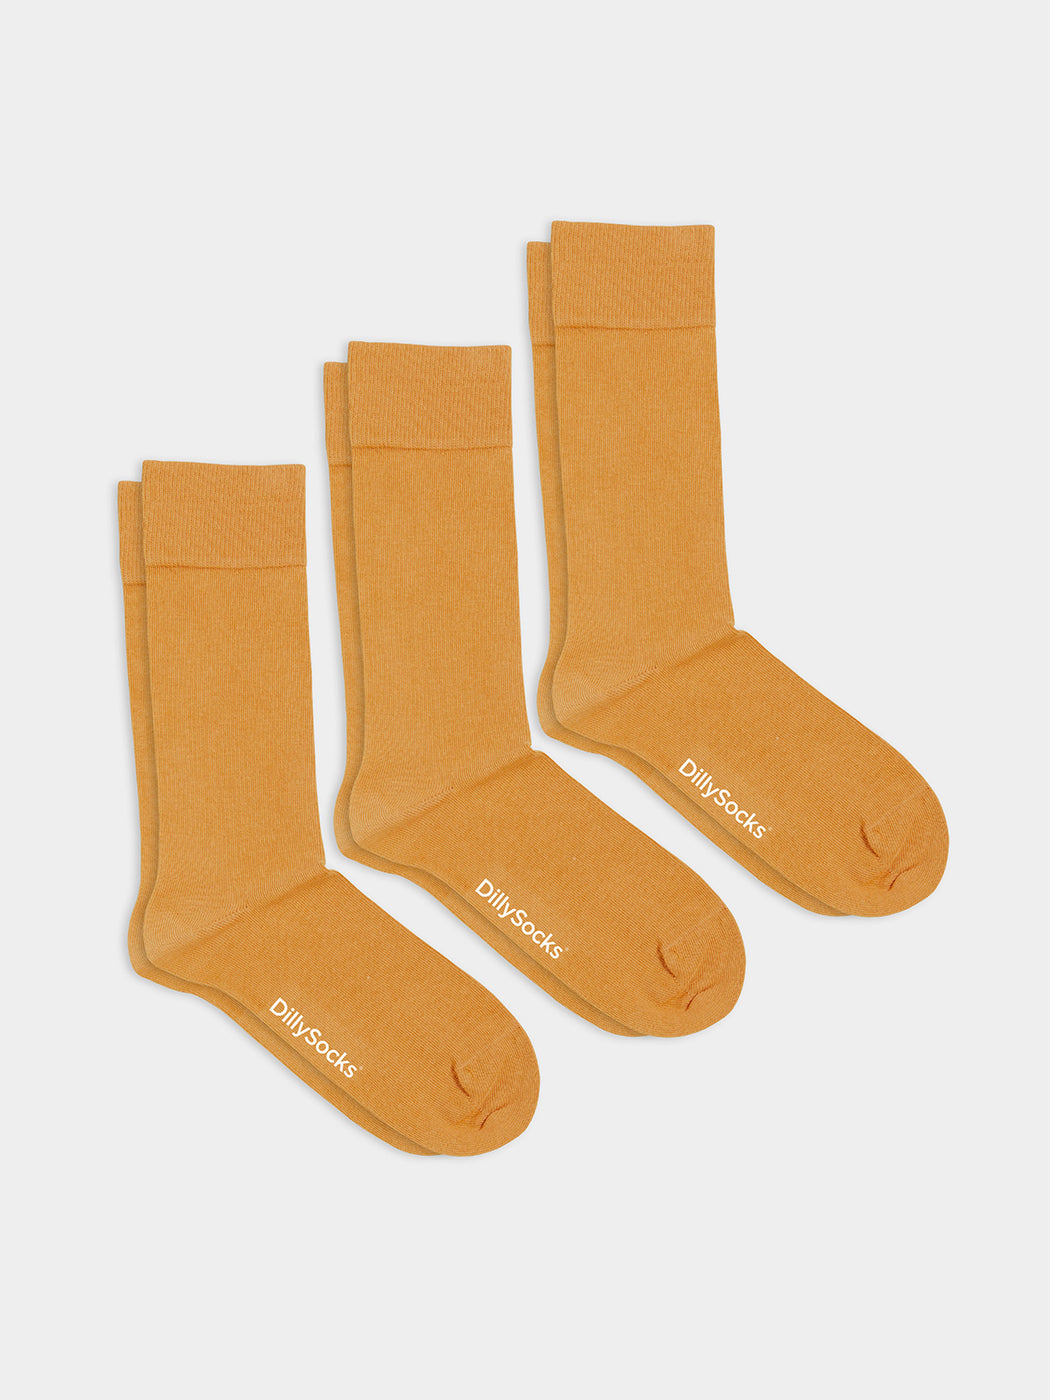 Pack of 3 pairs of plain yellow socks